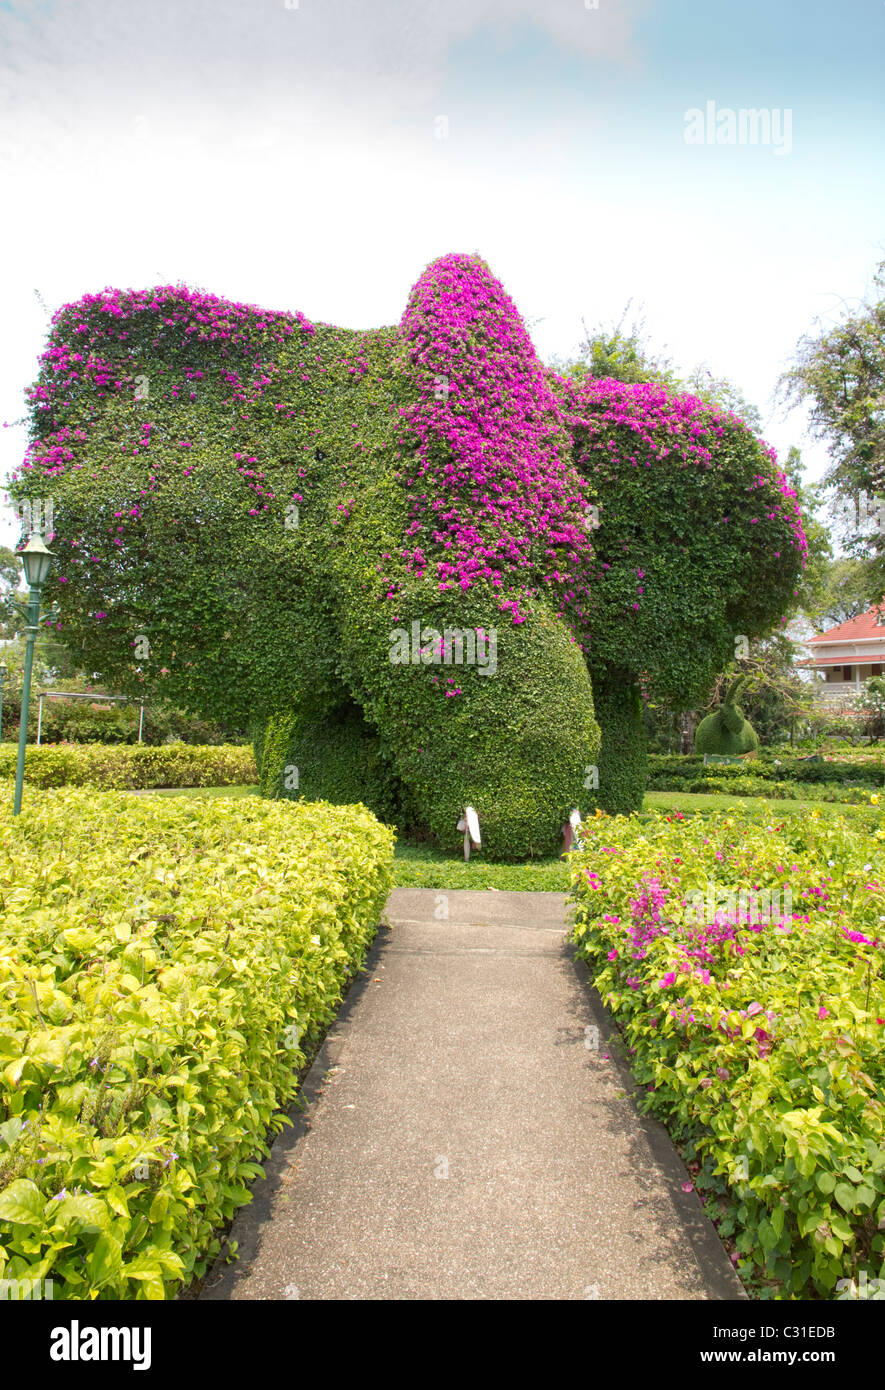 Topiary Elephant head Topiary, Thailand, Bourgainvillia Stock Photo